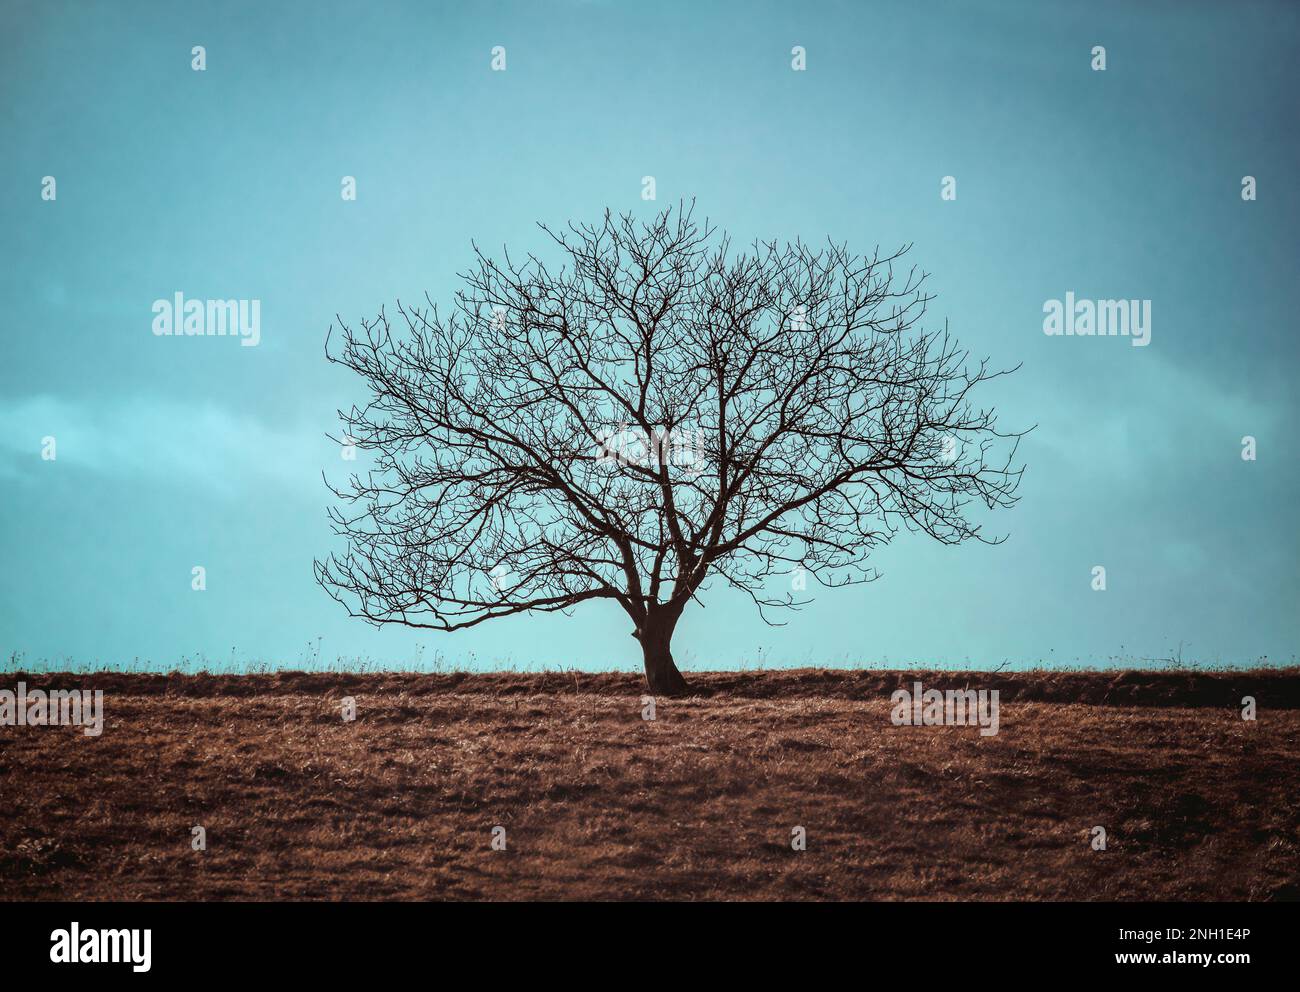 Ein einsamer, unfruchtbarer Baum steht inmitten eines offenen Grasfeldes, umgeben von Natur und unberührt von Zivilisation Stockfoto